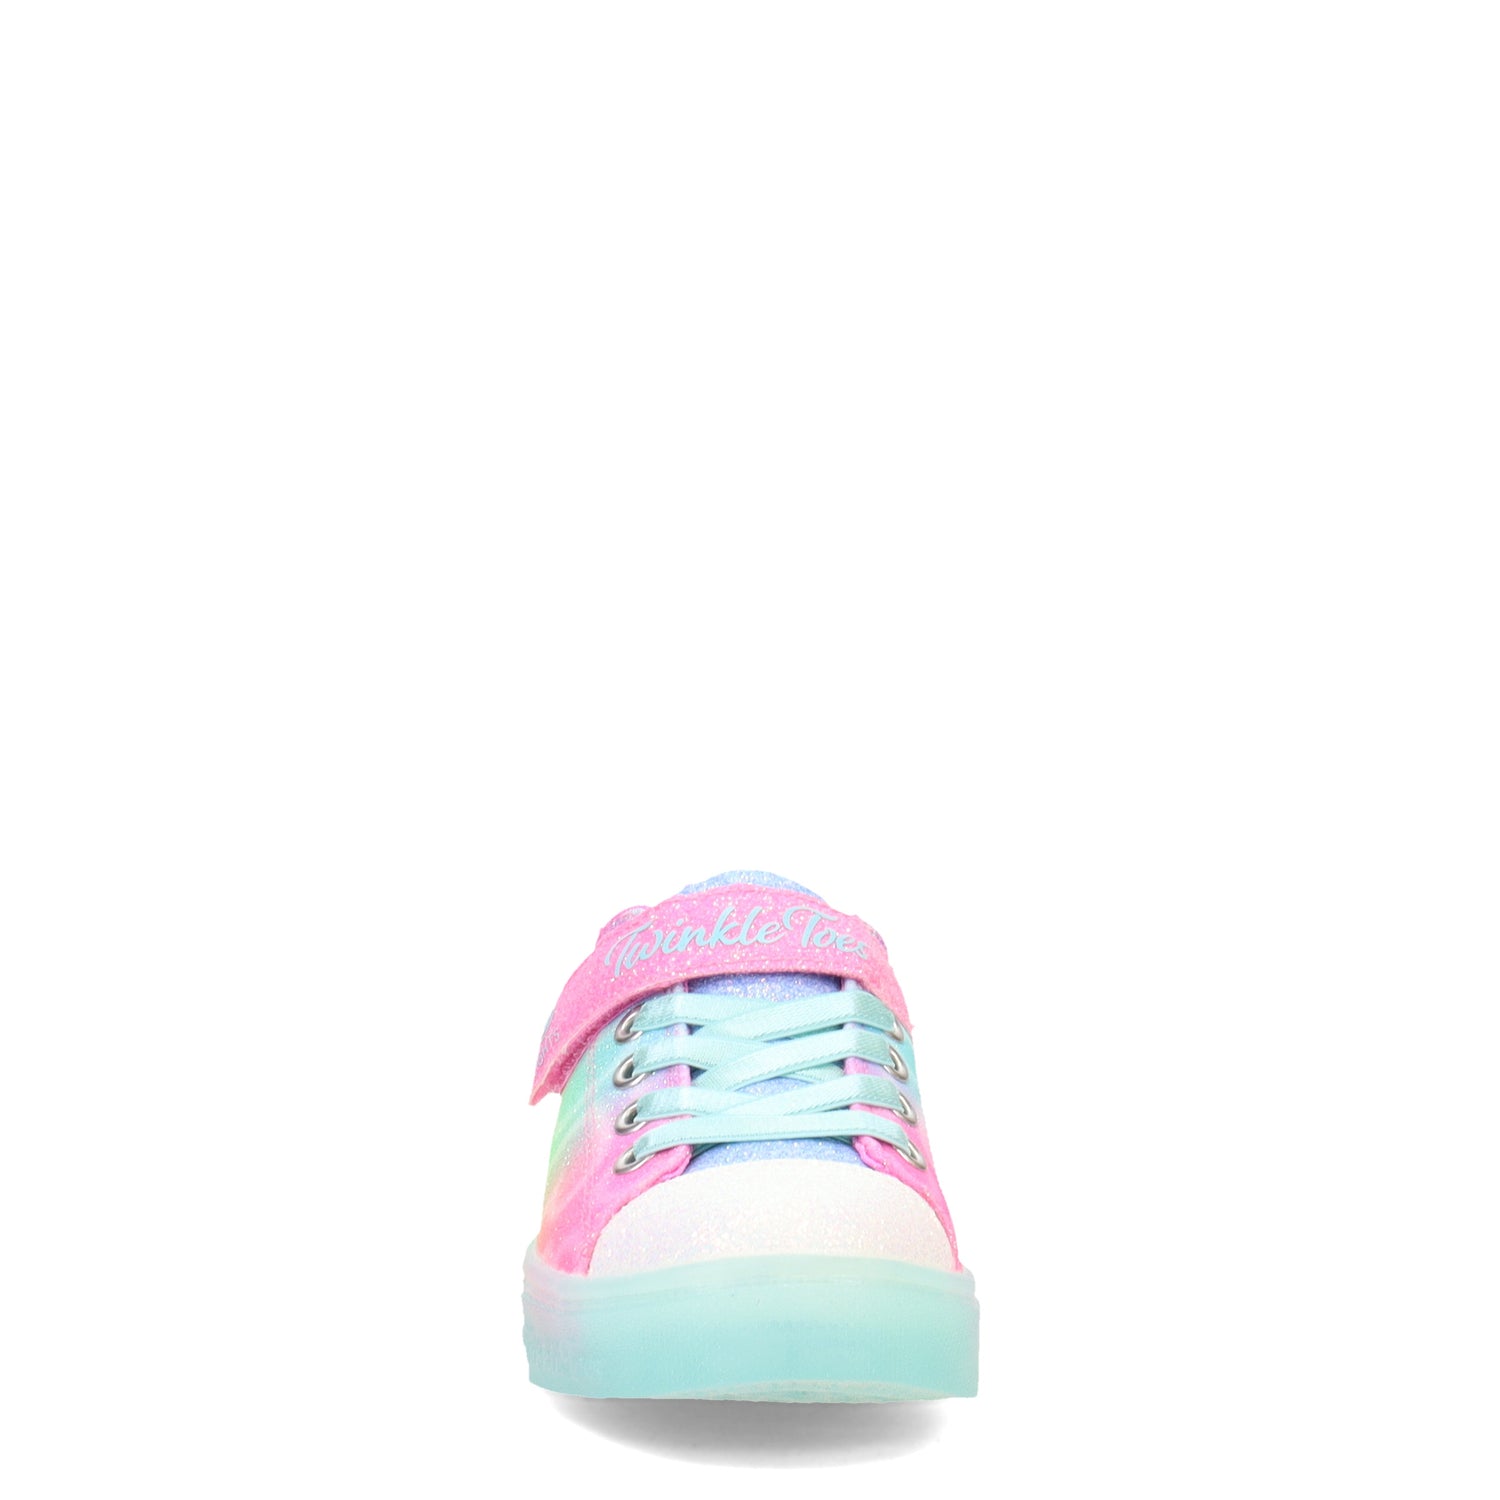 Skechers Kids' Twinkle Toes High Top Sneaker Toddler/Little Kid